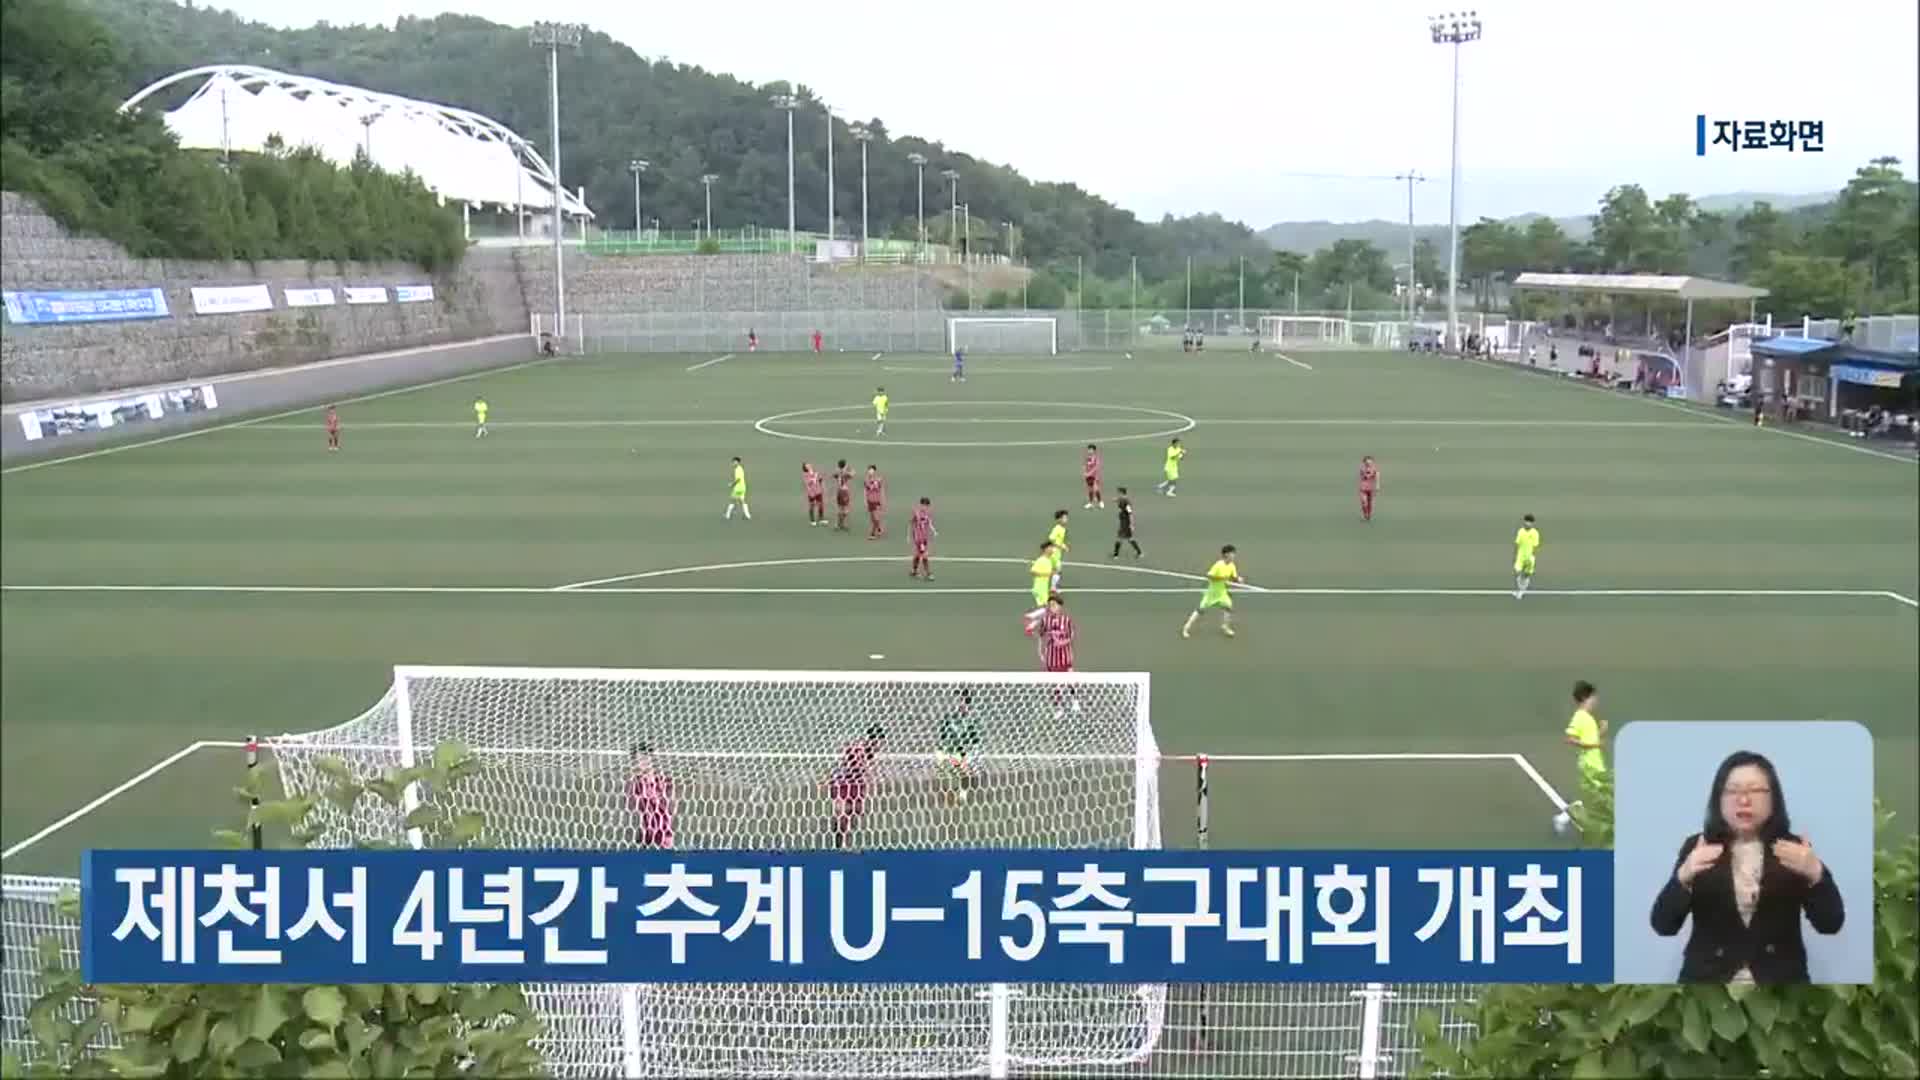 제천서 4년간 추계 U-15축구대회 개최